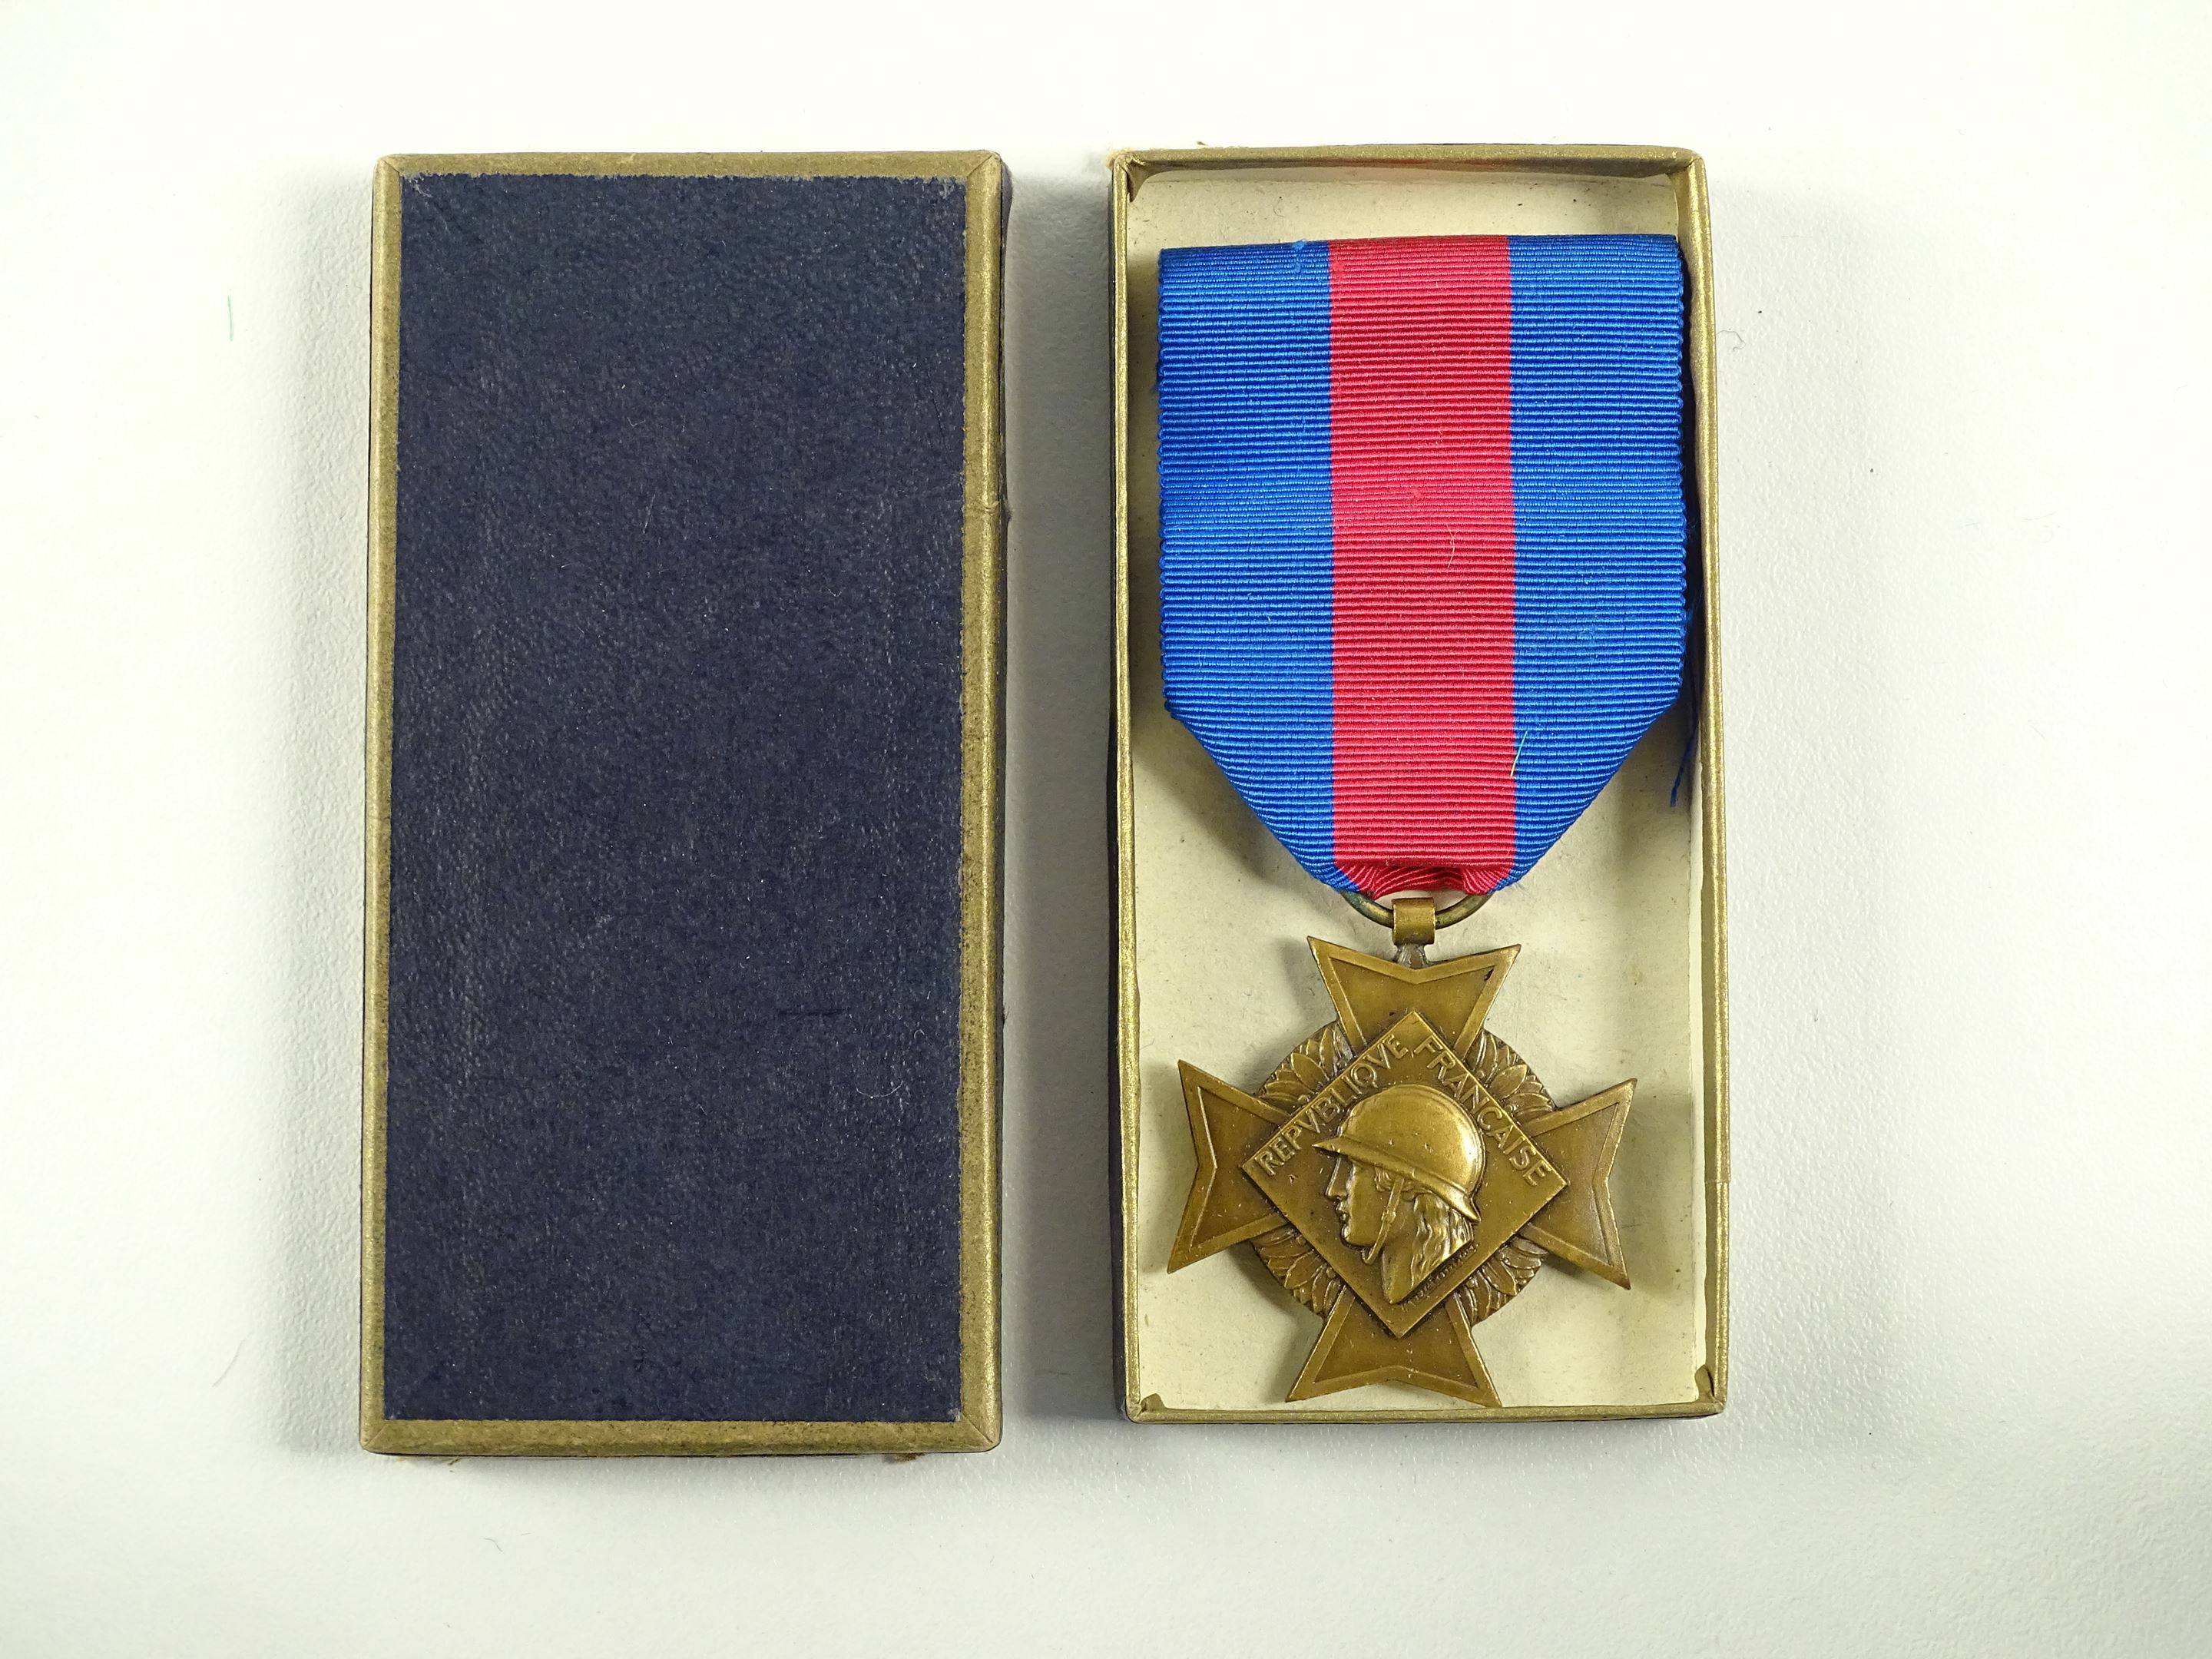 Médaille Service Militaire Volontaire Argent